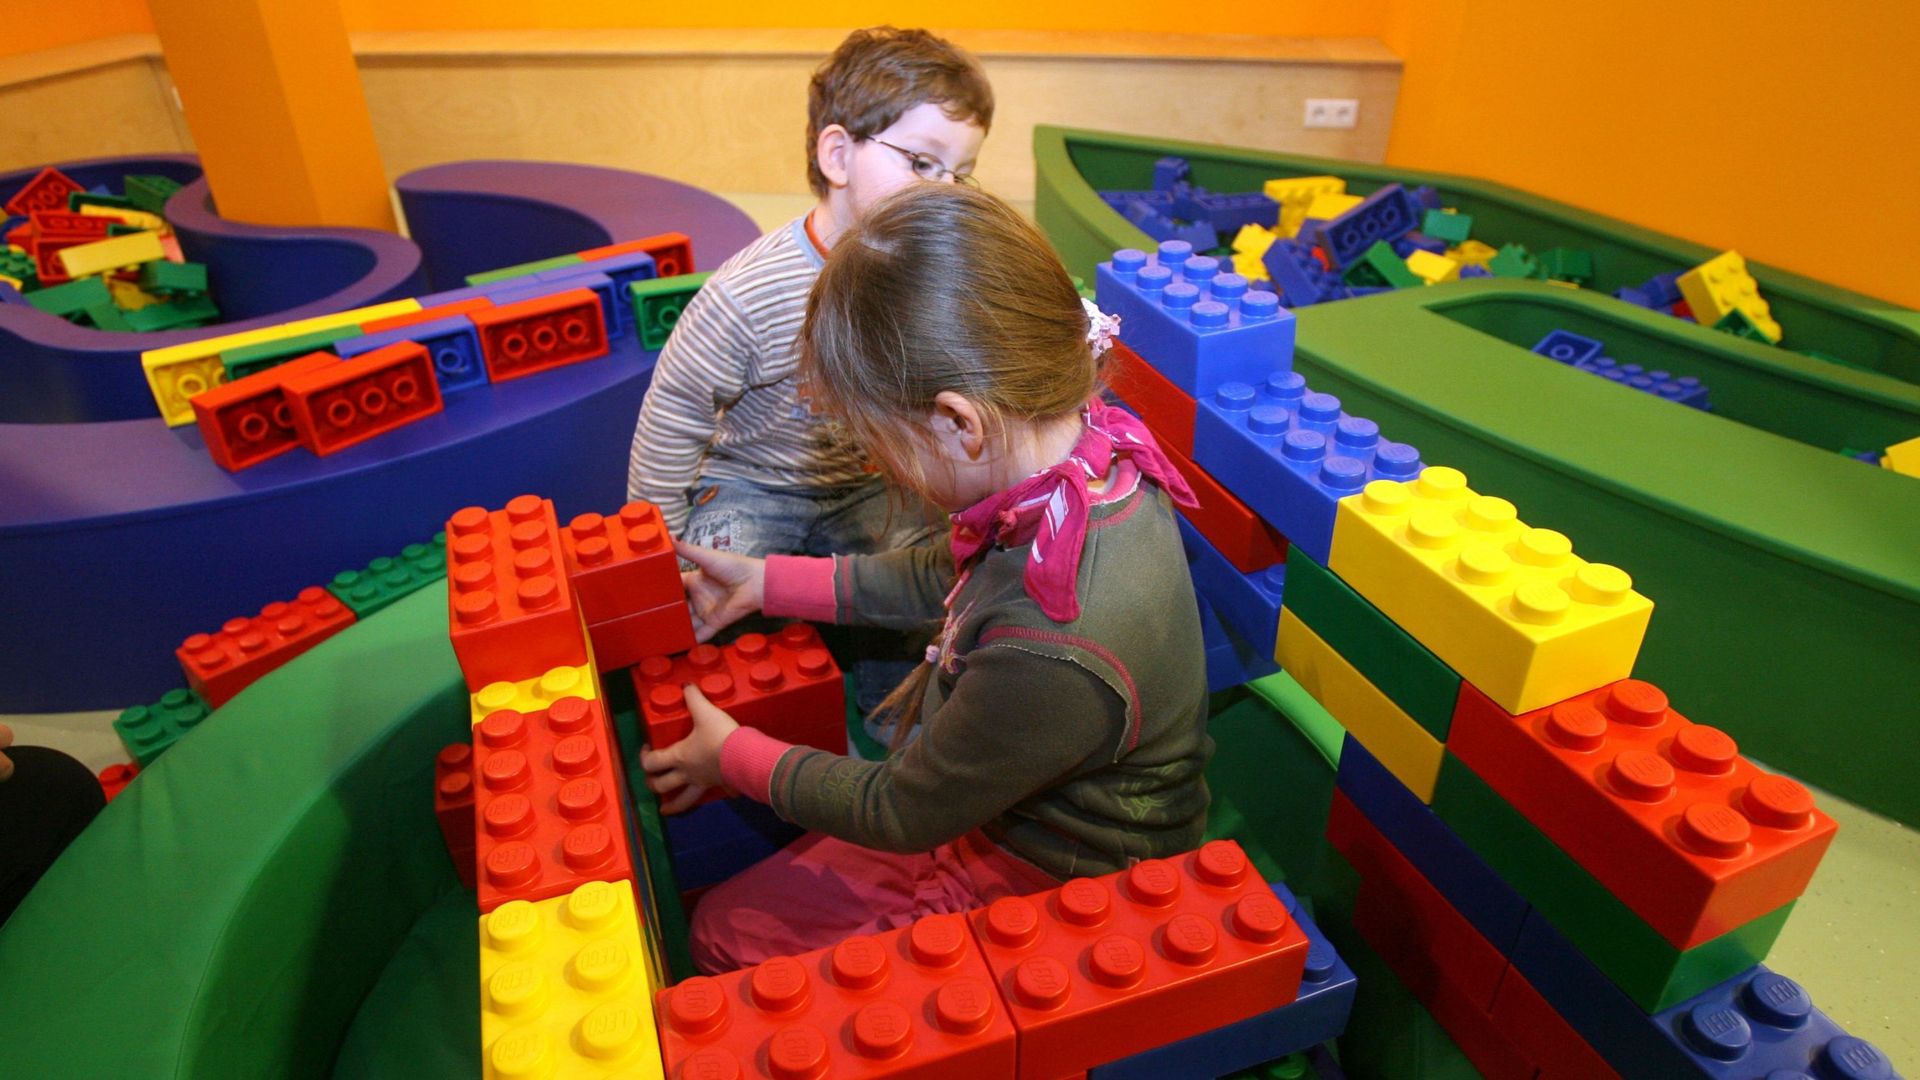 L'exposition Lego "Bricklive" pour quelques jours à Bruxelles